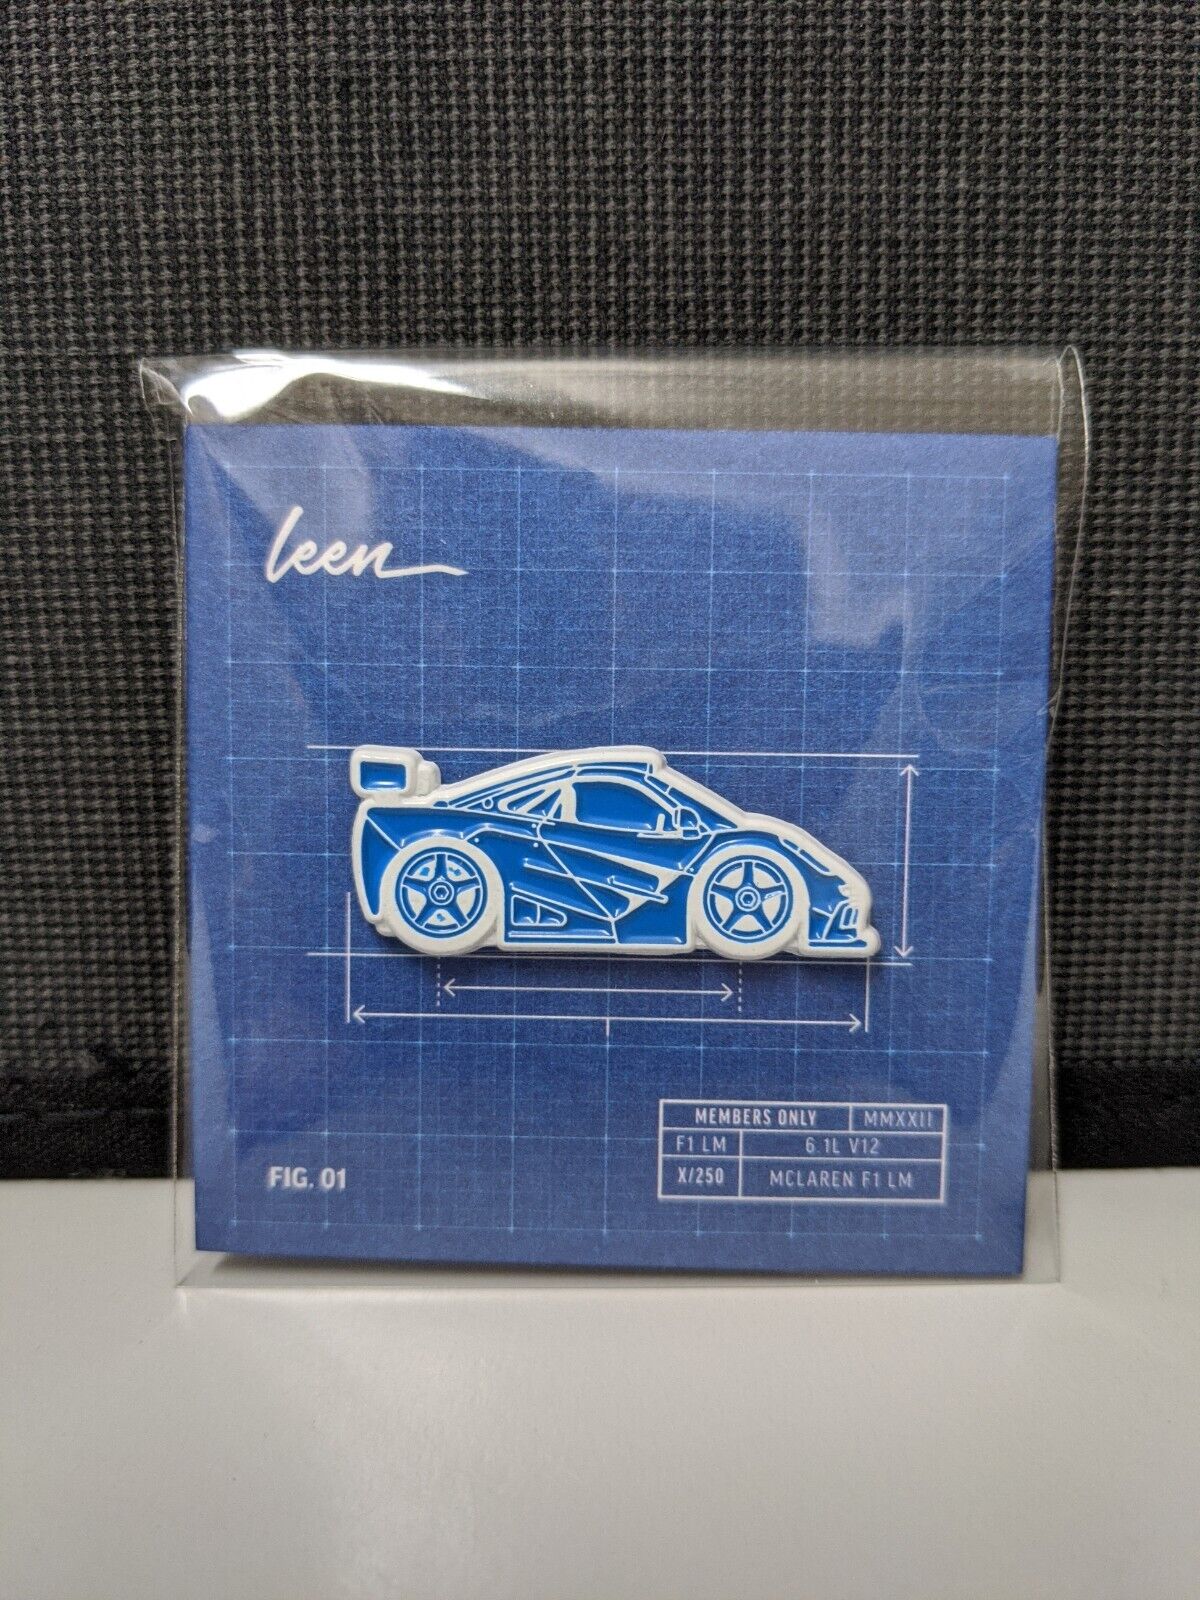 Leen Customs Mclaren F1 Gtr Lm Blueprint Limited Edition Pin